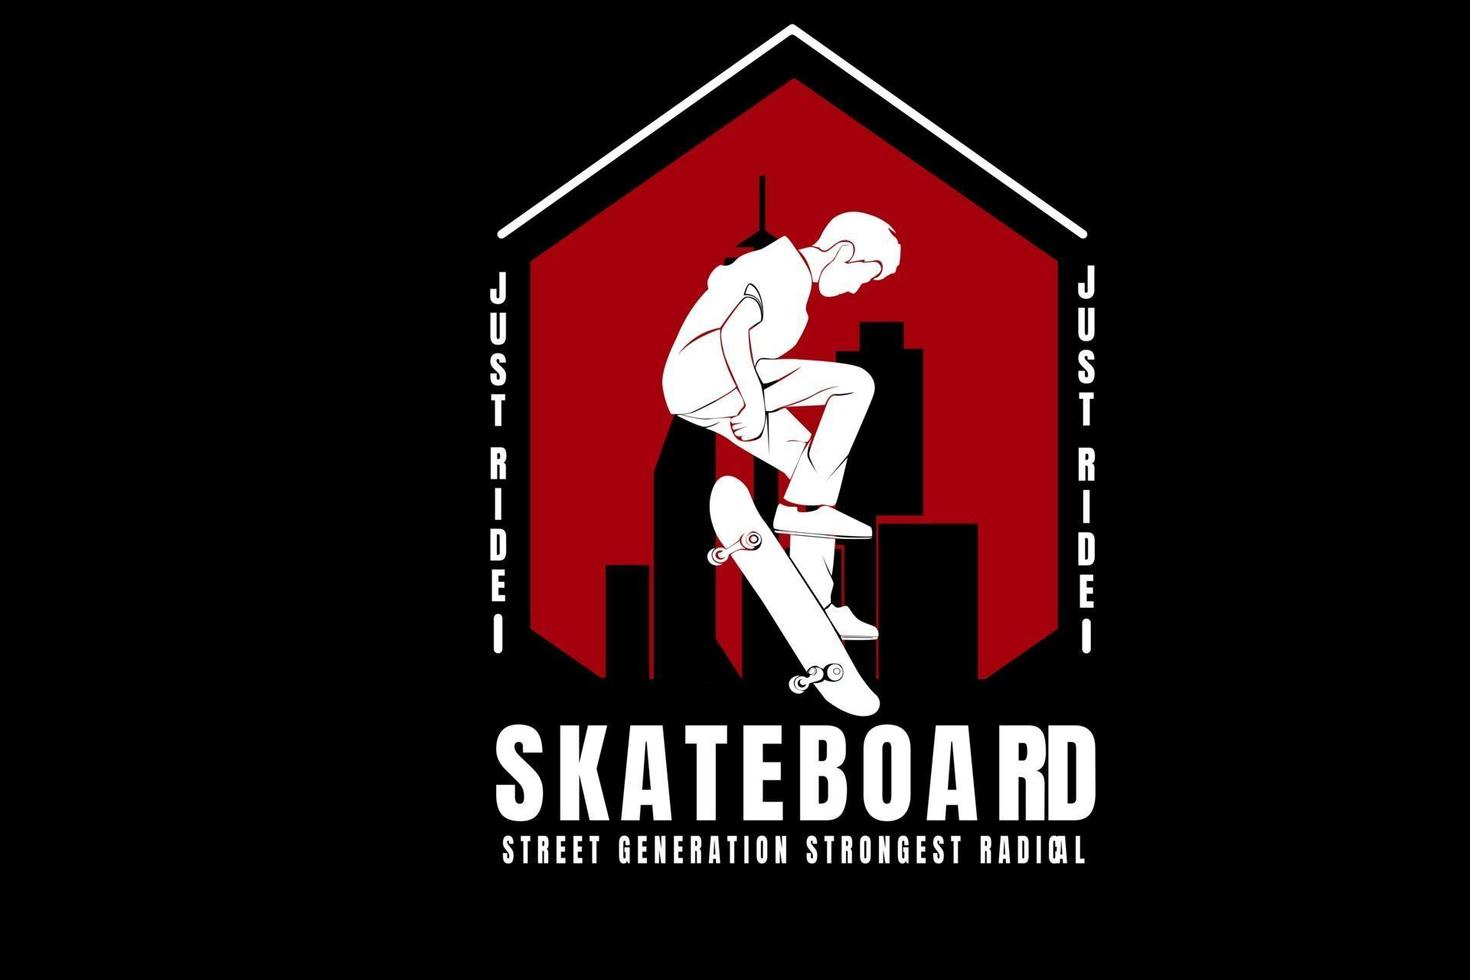 Fahre einfach Skateboard Street Generation stärkste Radikalfarbe weiß und rot vektor